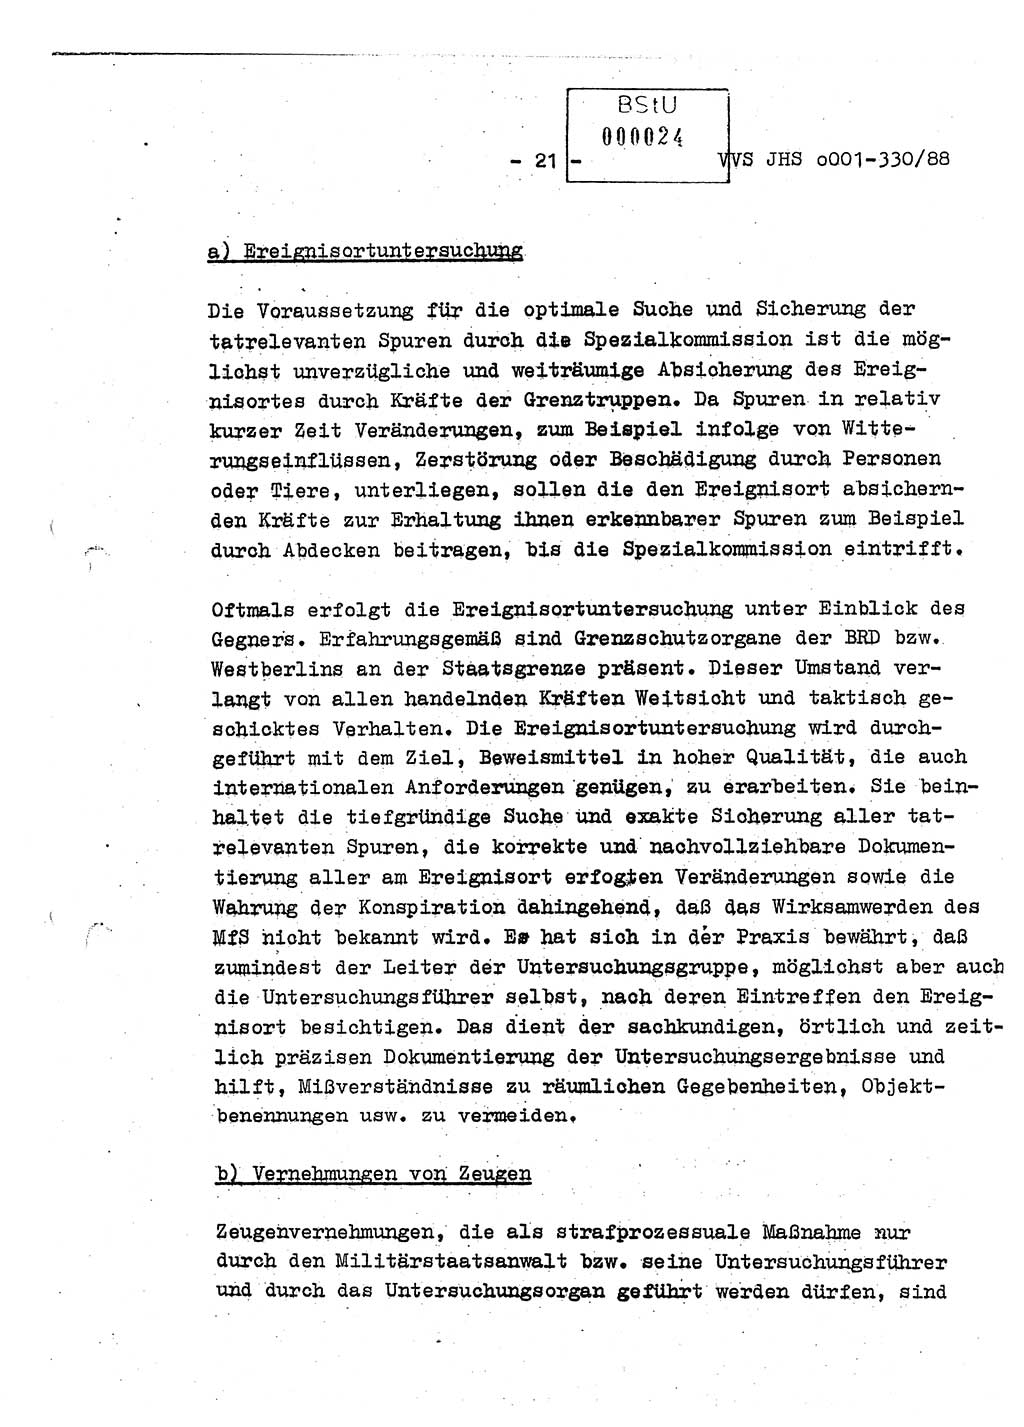 Diplomarbeit Offiziersschüler Thomas Mühle (HA Ⅸ/6), Ministerium für Staatssicherheit (MfS) [Deutsche Demokratische Republik (DDR)], Juristische Hochschule (JHS), Vertrauliche Verschlußsache (VVS) o001-330/88, Potsdam 1988, Seite 21 (Dipl.-Arb. MfS DDR JHS VVS o001-330/88 1988, S. 21)